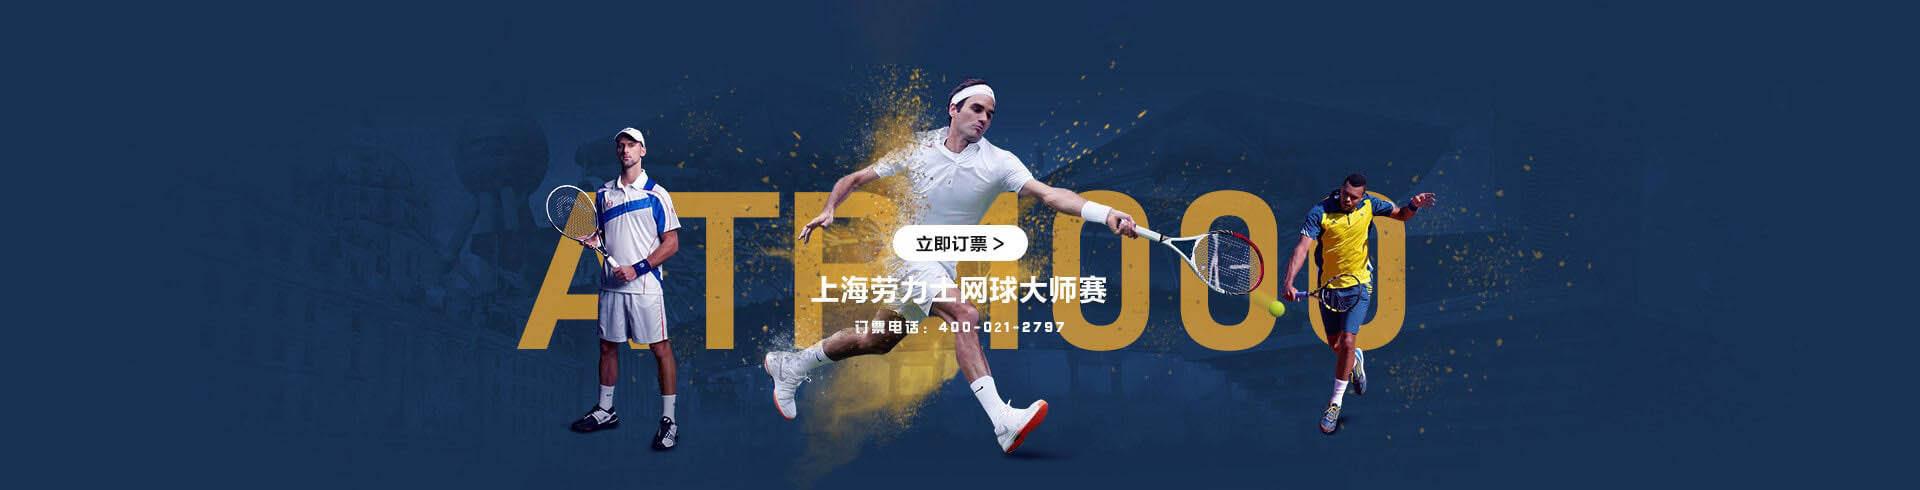 上海ATP000劳力士网球大师赛官方订票